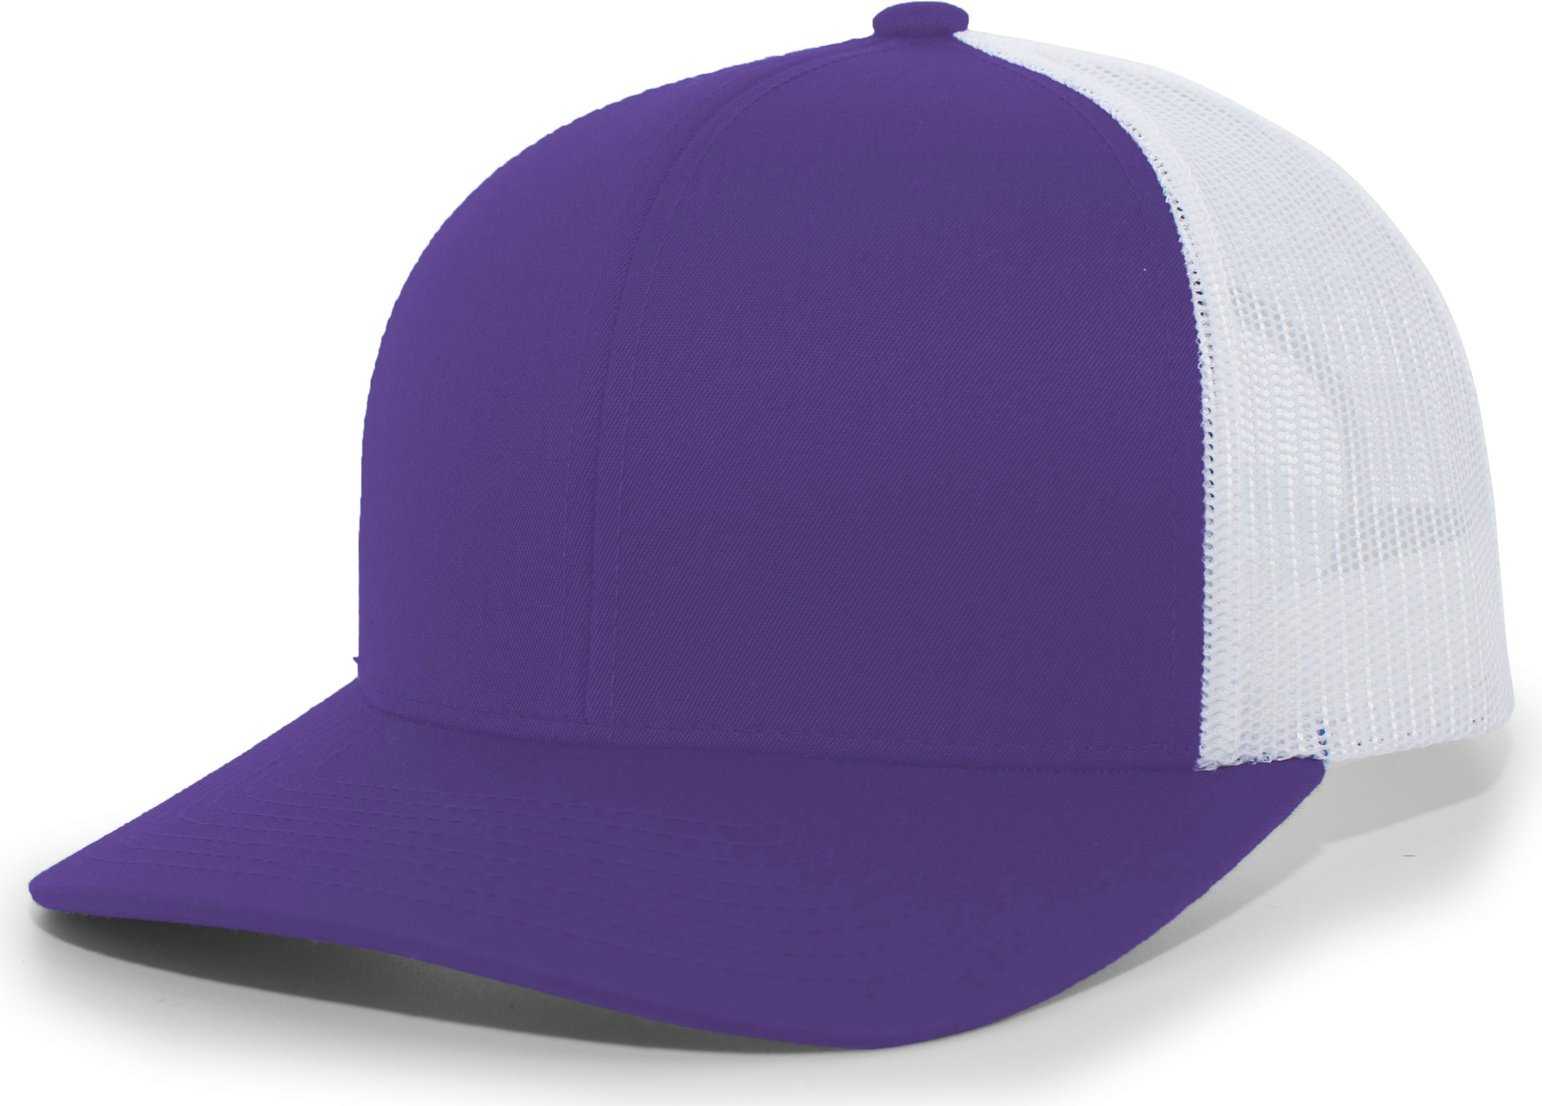 Pacific Headwear 104C Trucker Snapback Cap - Purple White - HIT a Double